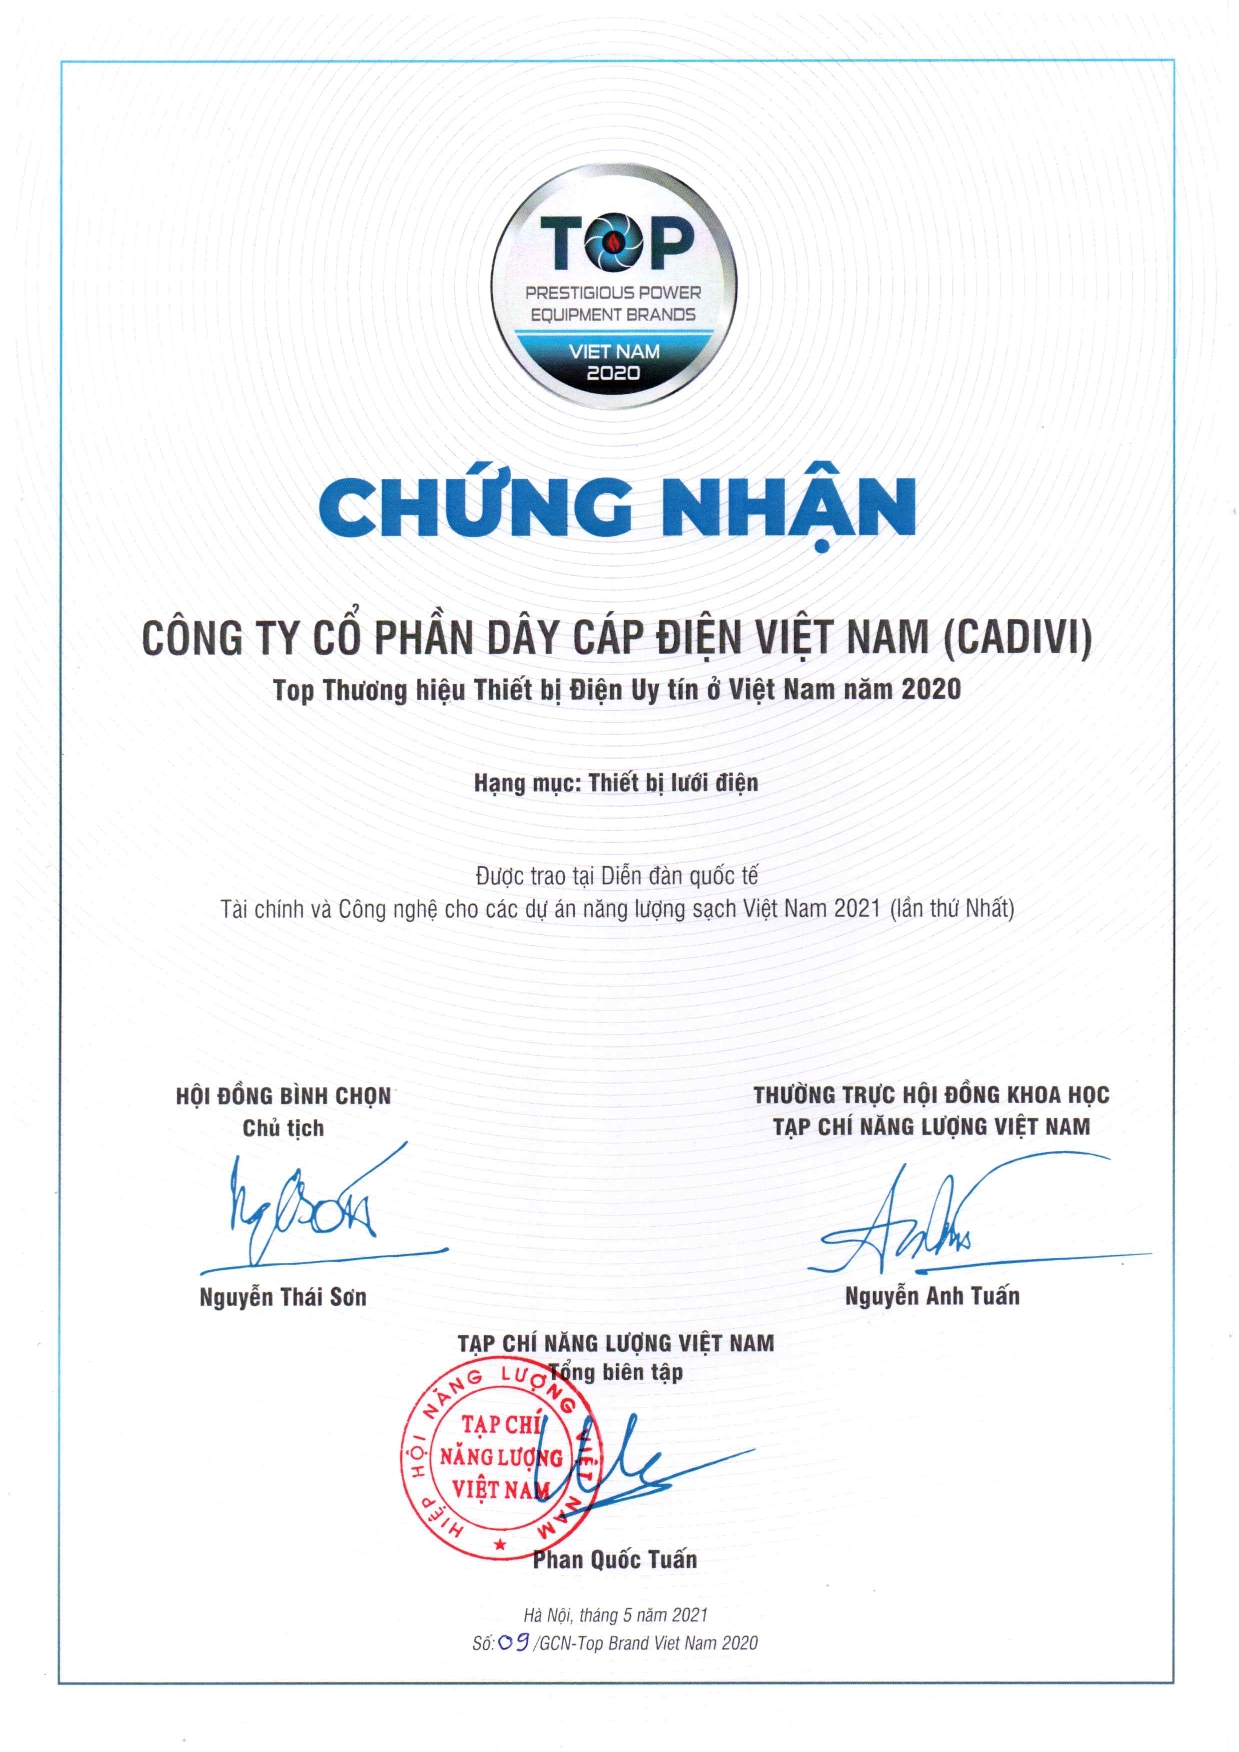 Cadivi đạt danh hiệu top thương hiệu thiết bị điện uy tín Việt Nam năm 2020